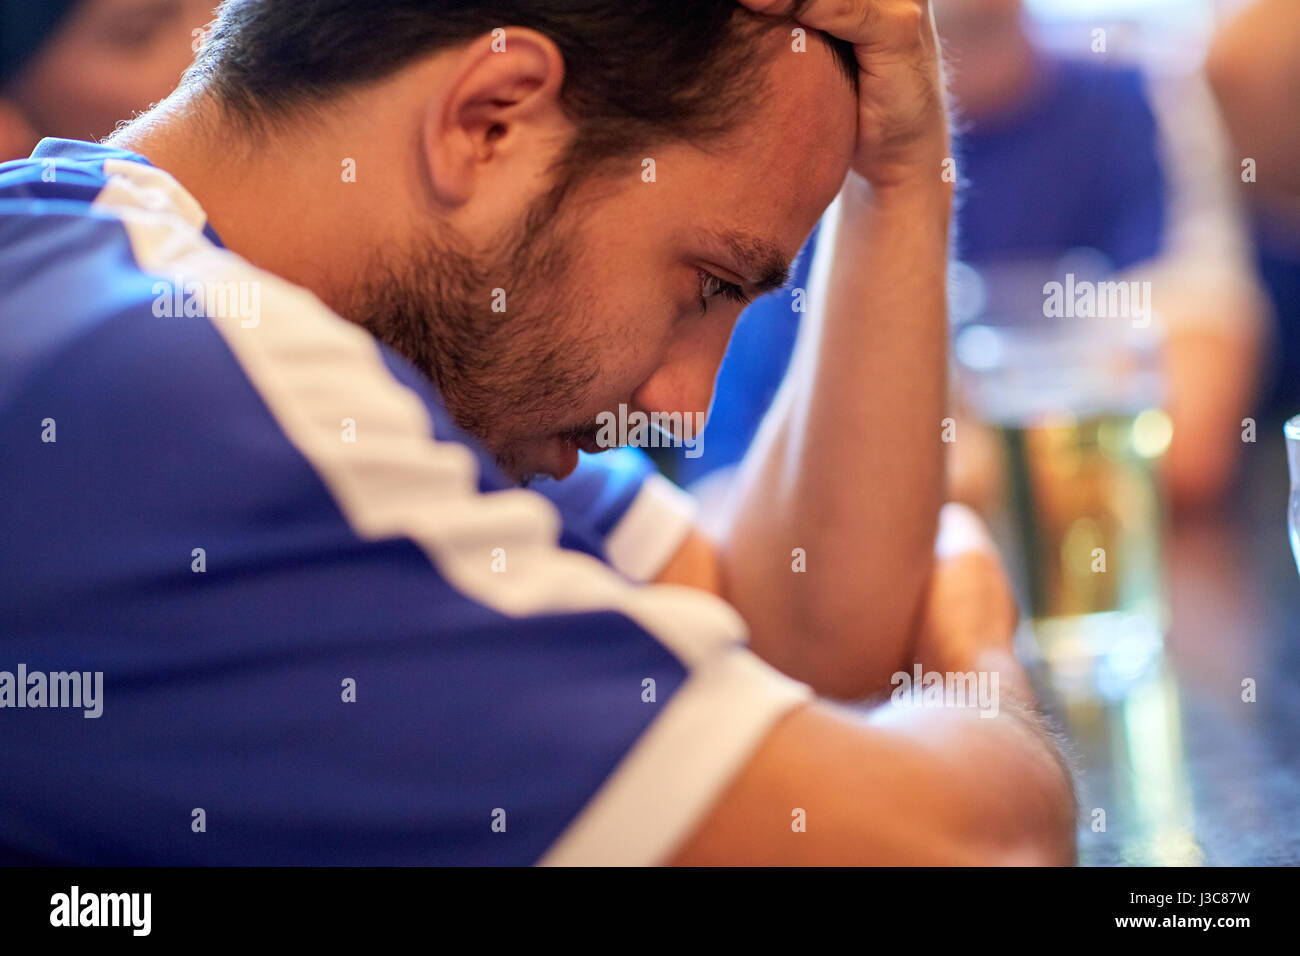 close up of sad football fan at bar or pub Stock Photo